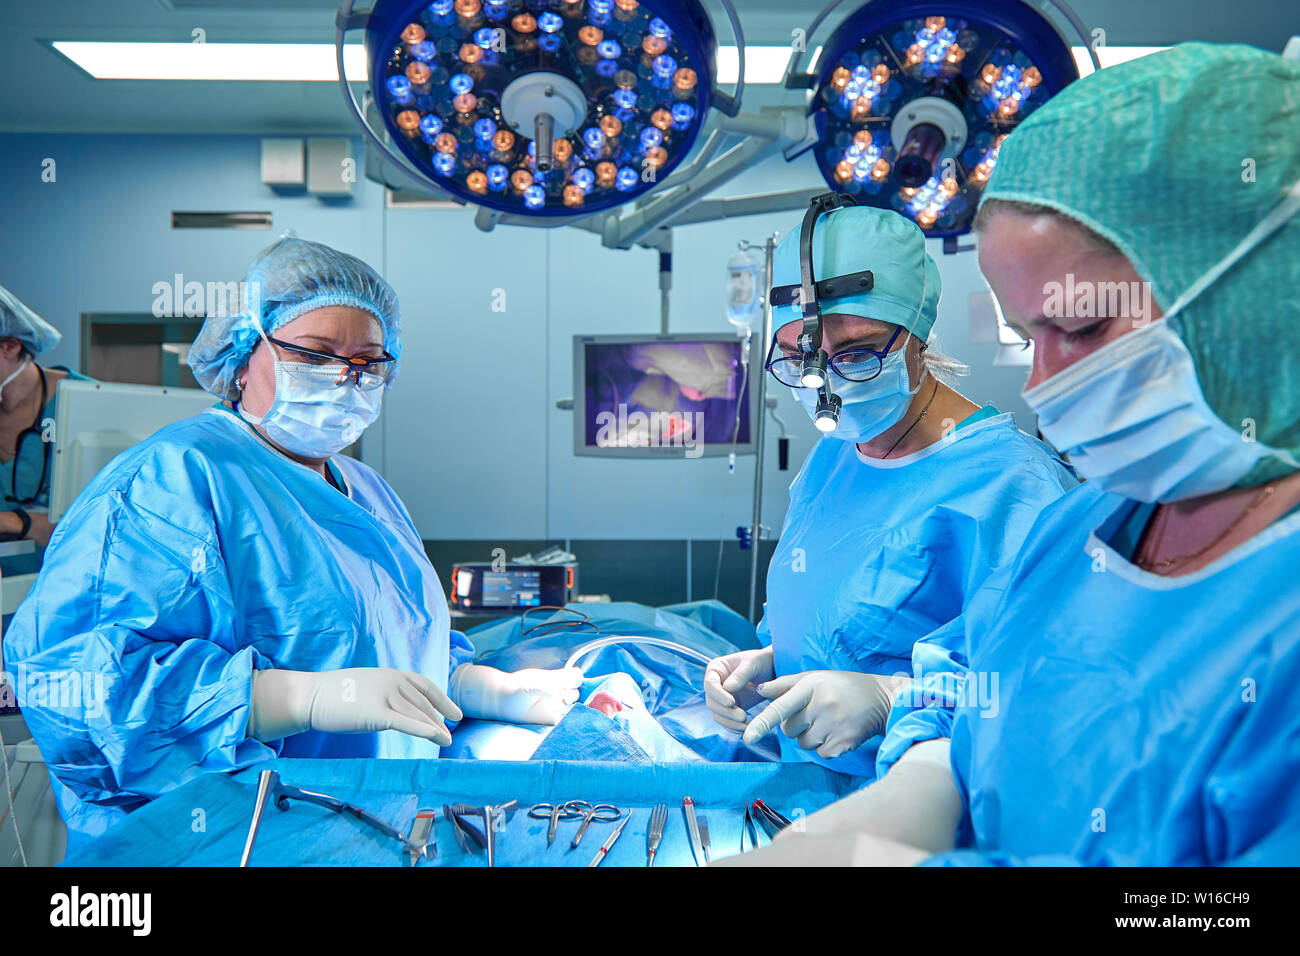 Une équipe du chirurgien en uniforme effectue une opération sur un patient dans une clinique de chirurgie cardiaque. La médecine moderne, une équipe de professionnels de la santé, les chirurgiens. Banque D'Images